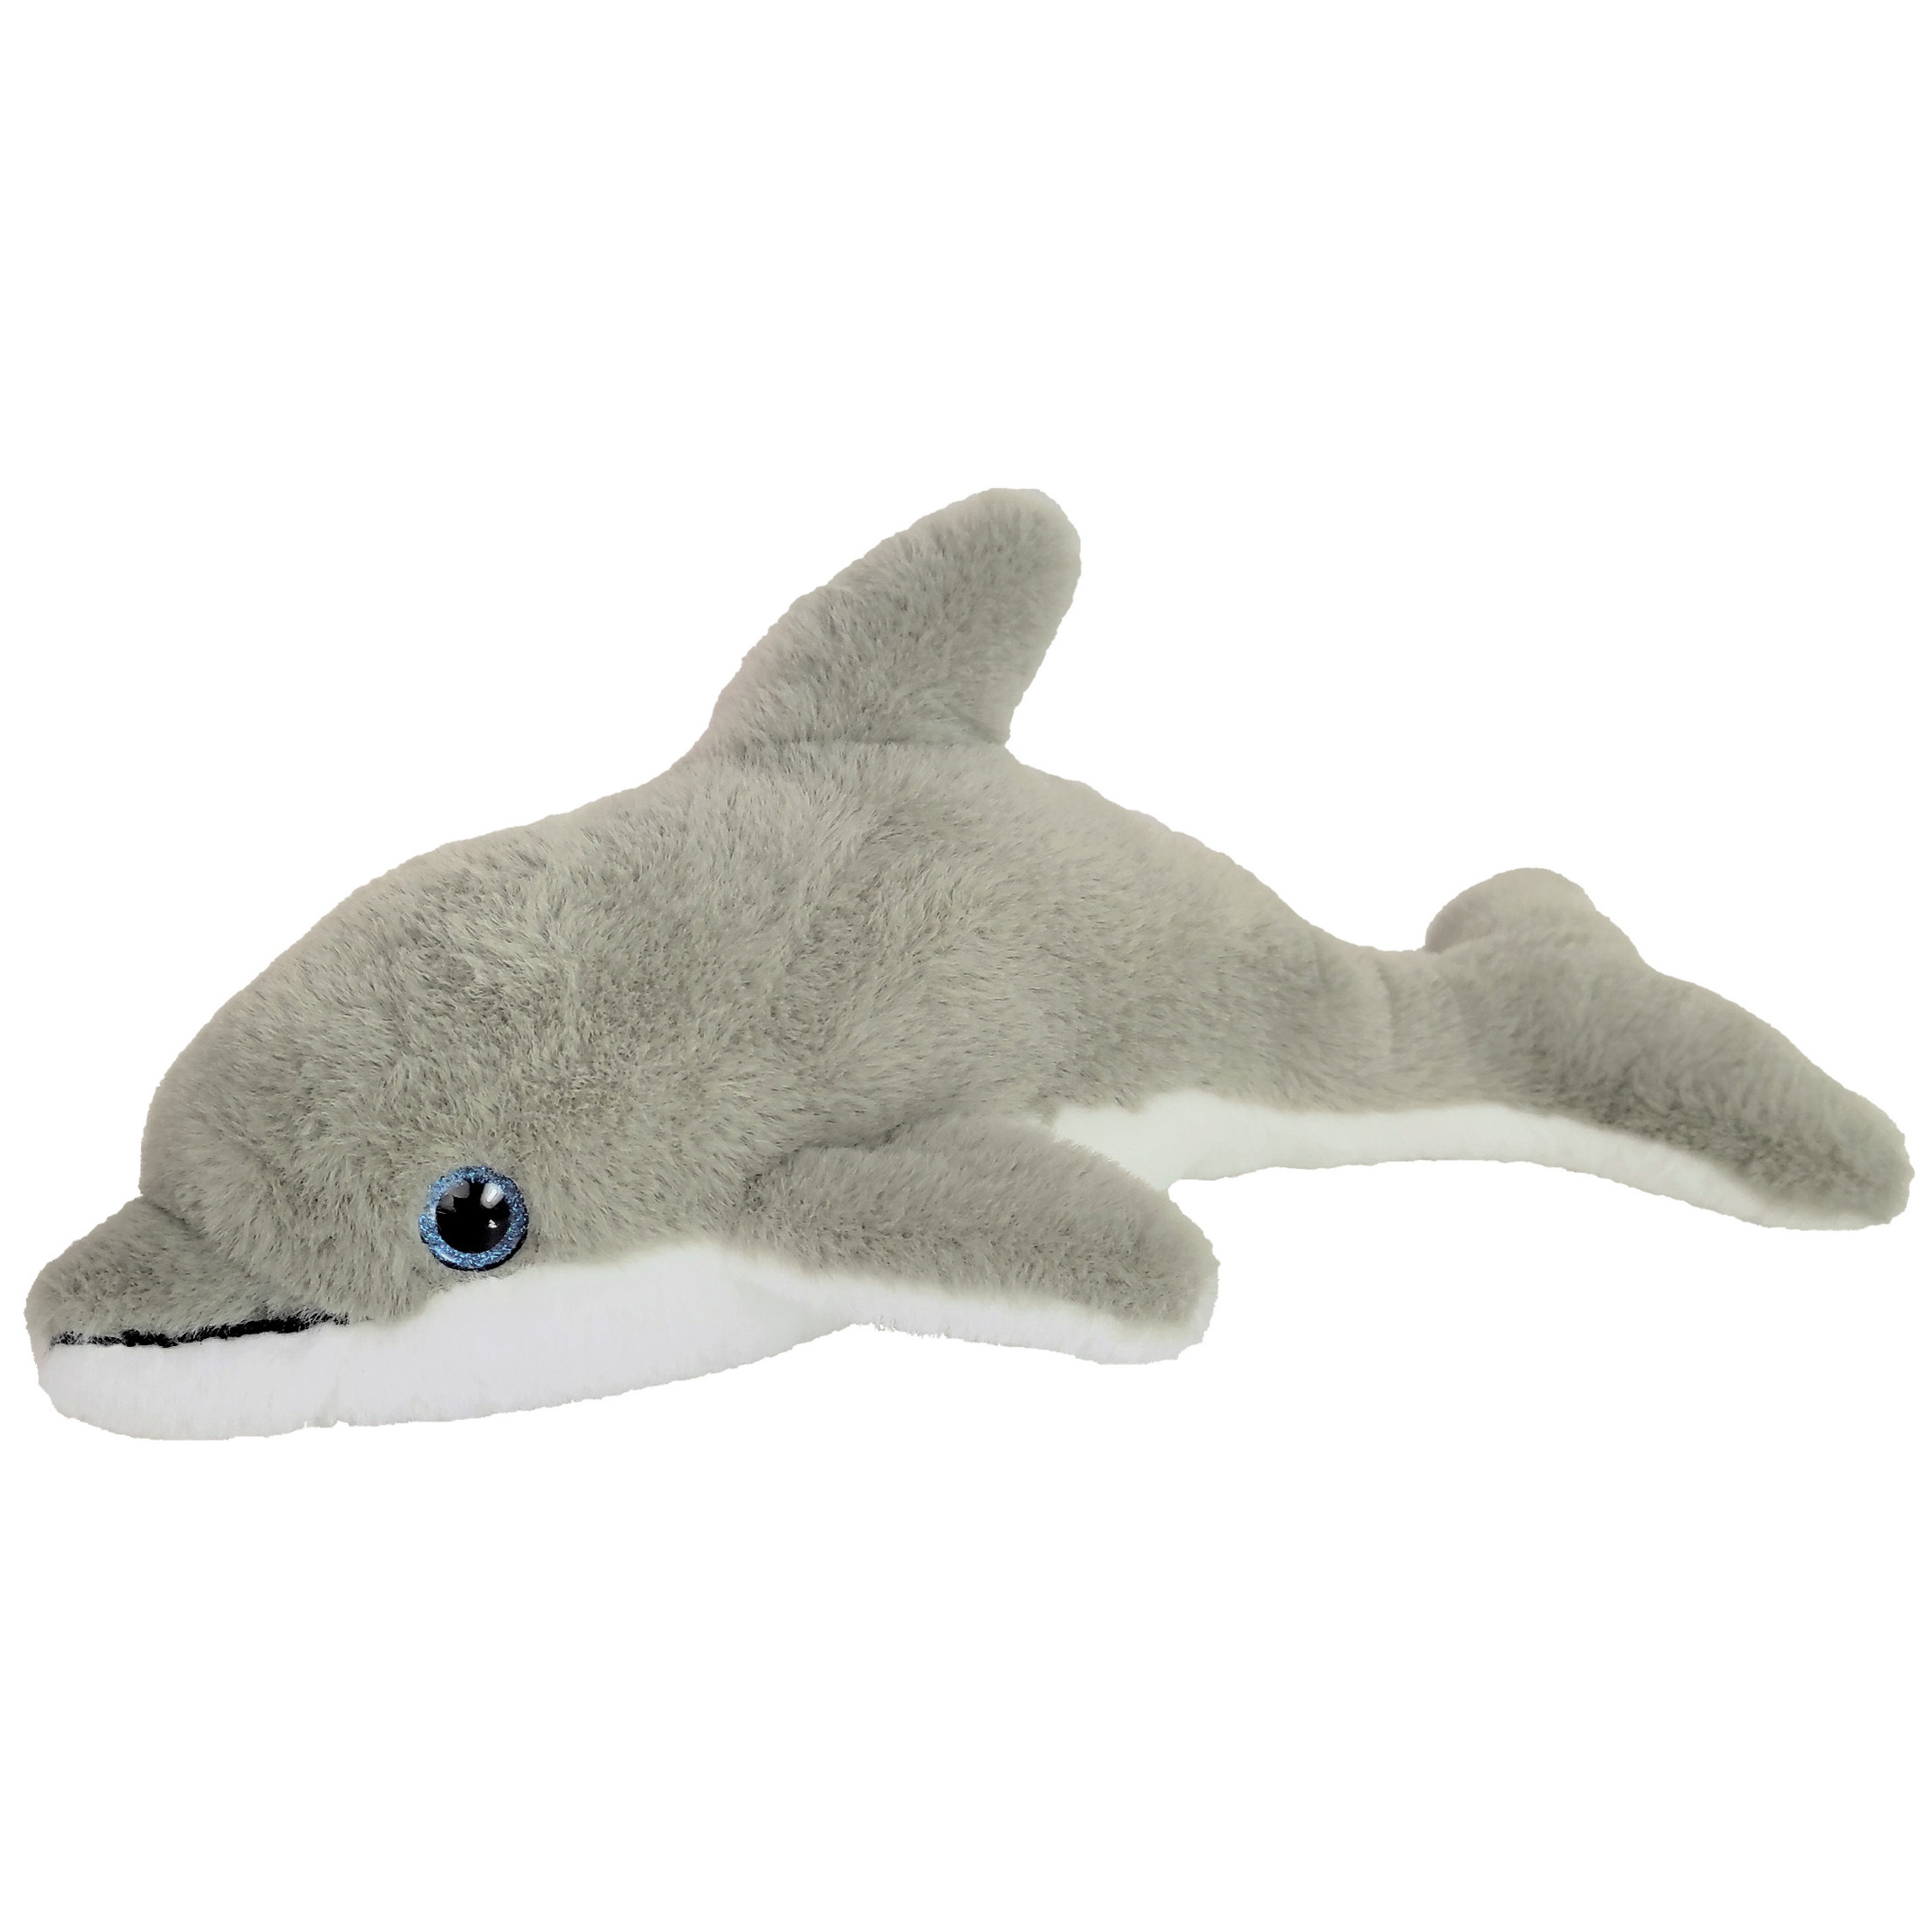 Inware pluche dolfijn knuffeldier grijs-wit zwemmend 32 cm